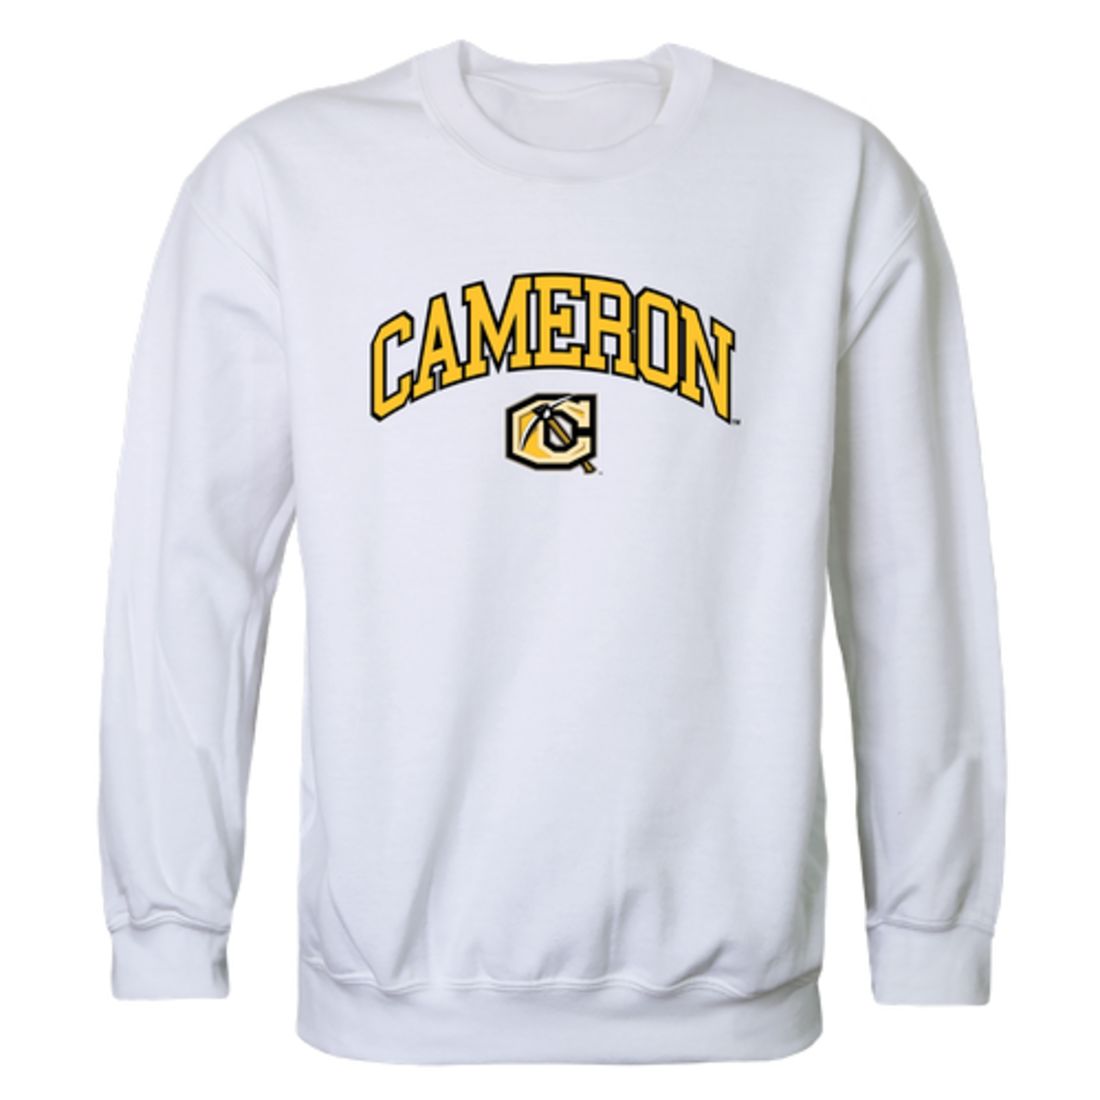 Cameron-University-Aggies-Campus-Fleece-Crewneck-Pullover-Sweatshirt